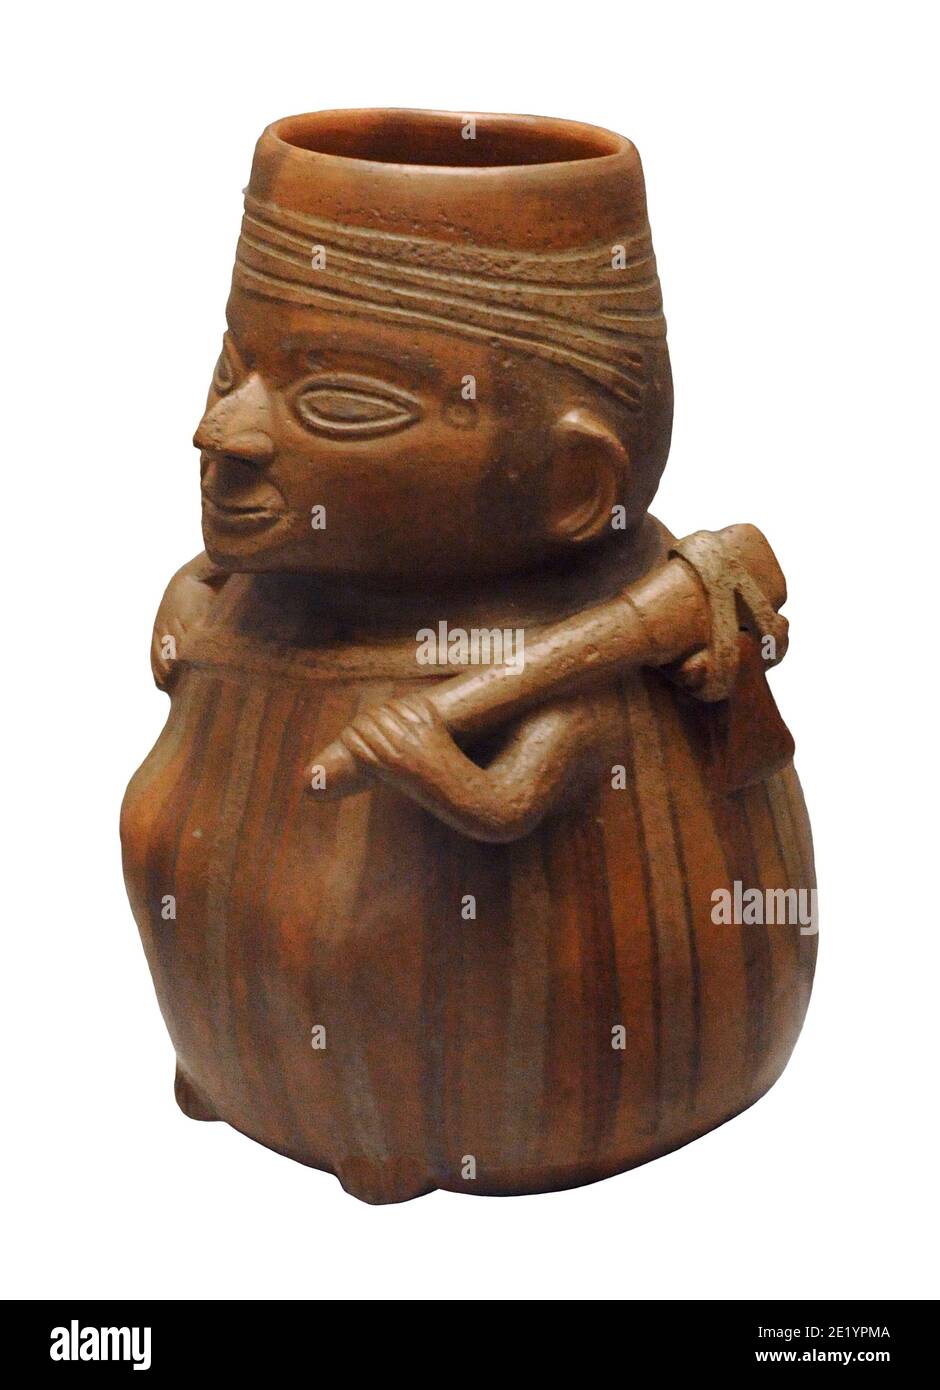 Imbarcazione che rappresenta un contadino con i suoi strumenti di lavoro. Ceramica. Cultura Inca (1400-1533 d.C.). Perù. Museo delle Americhe. Madrid, Spagna. Foto Stock